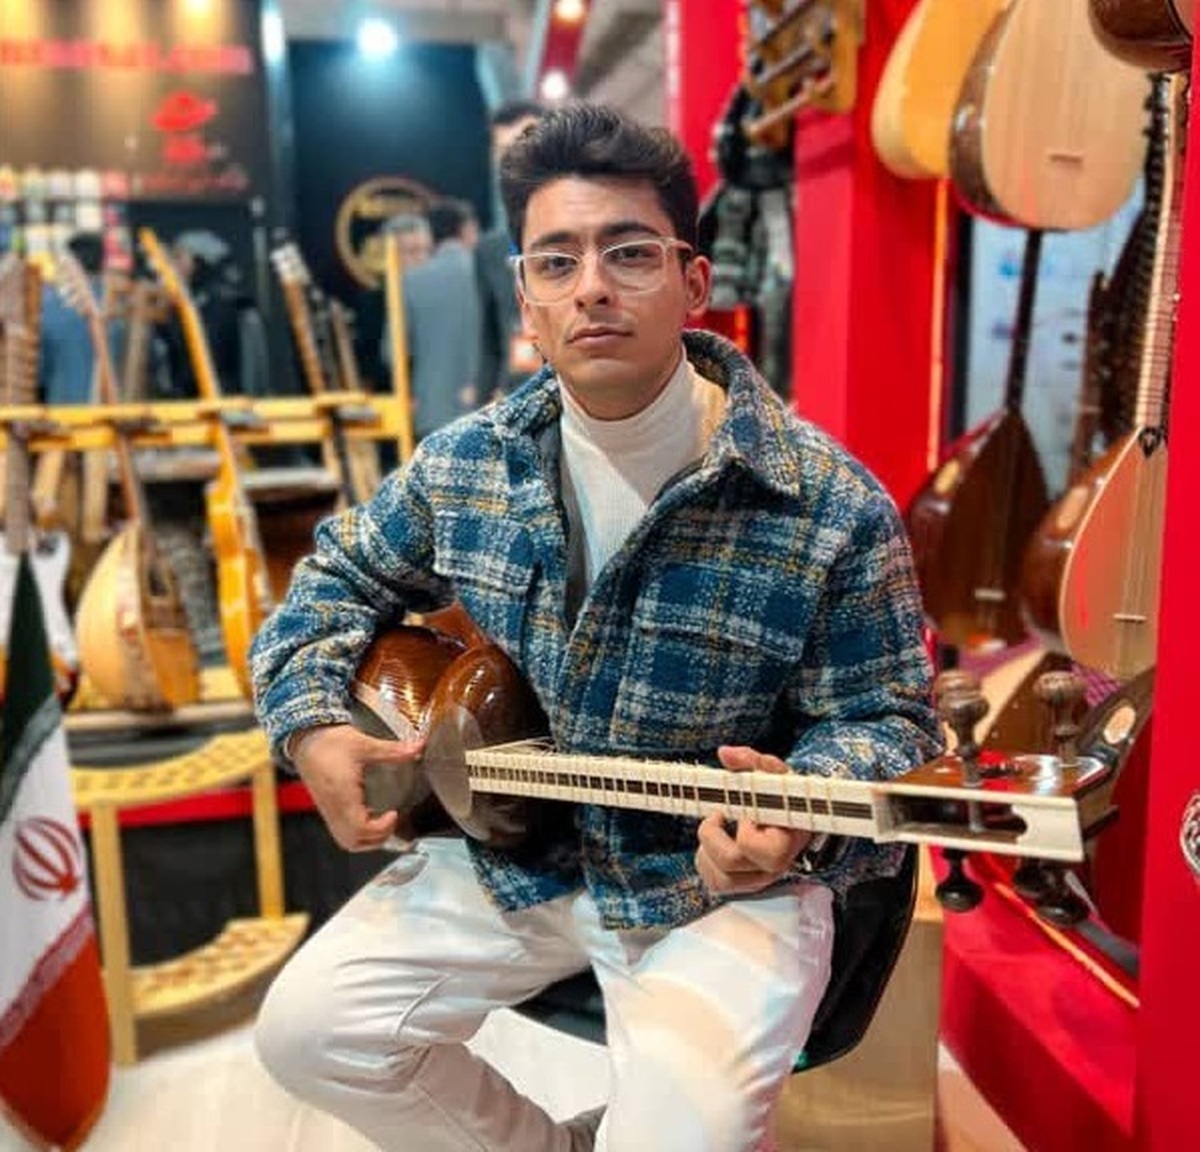 علی خدایی: موسیقی سنتی جایگاه خود را از دست داده است 